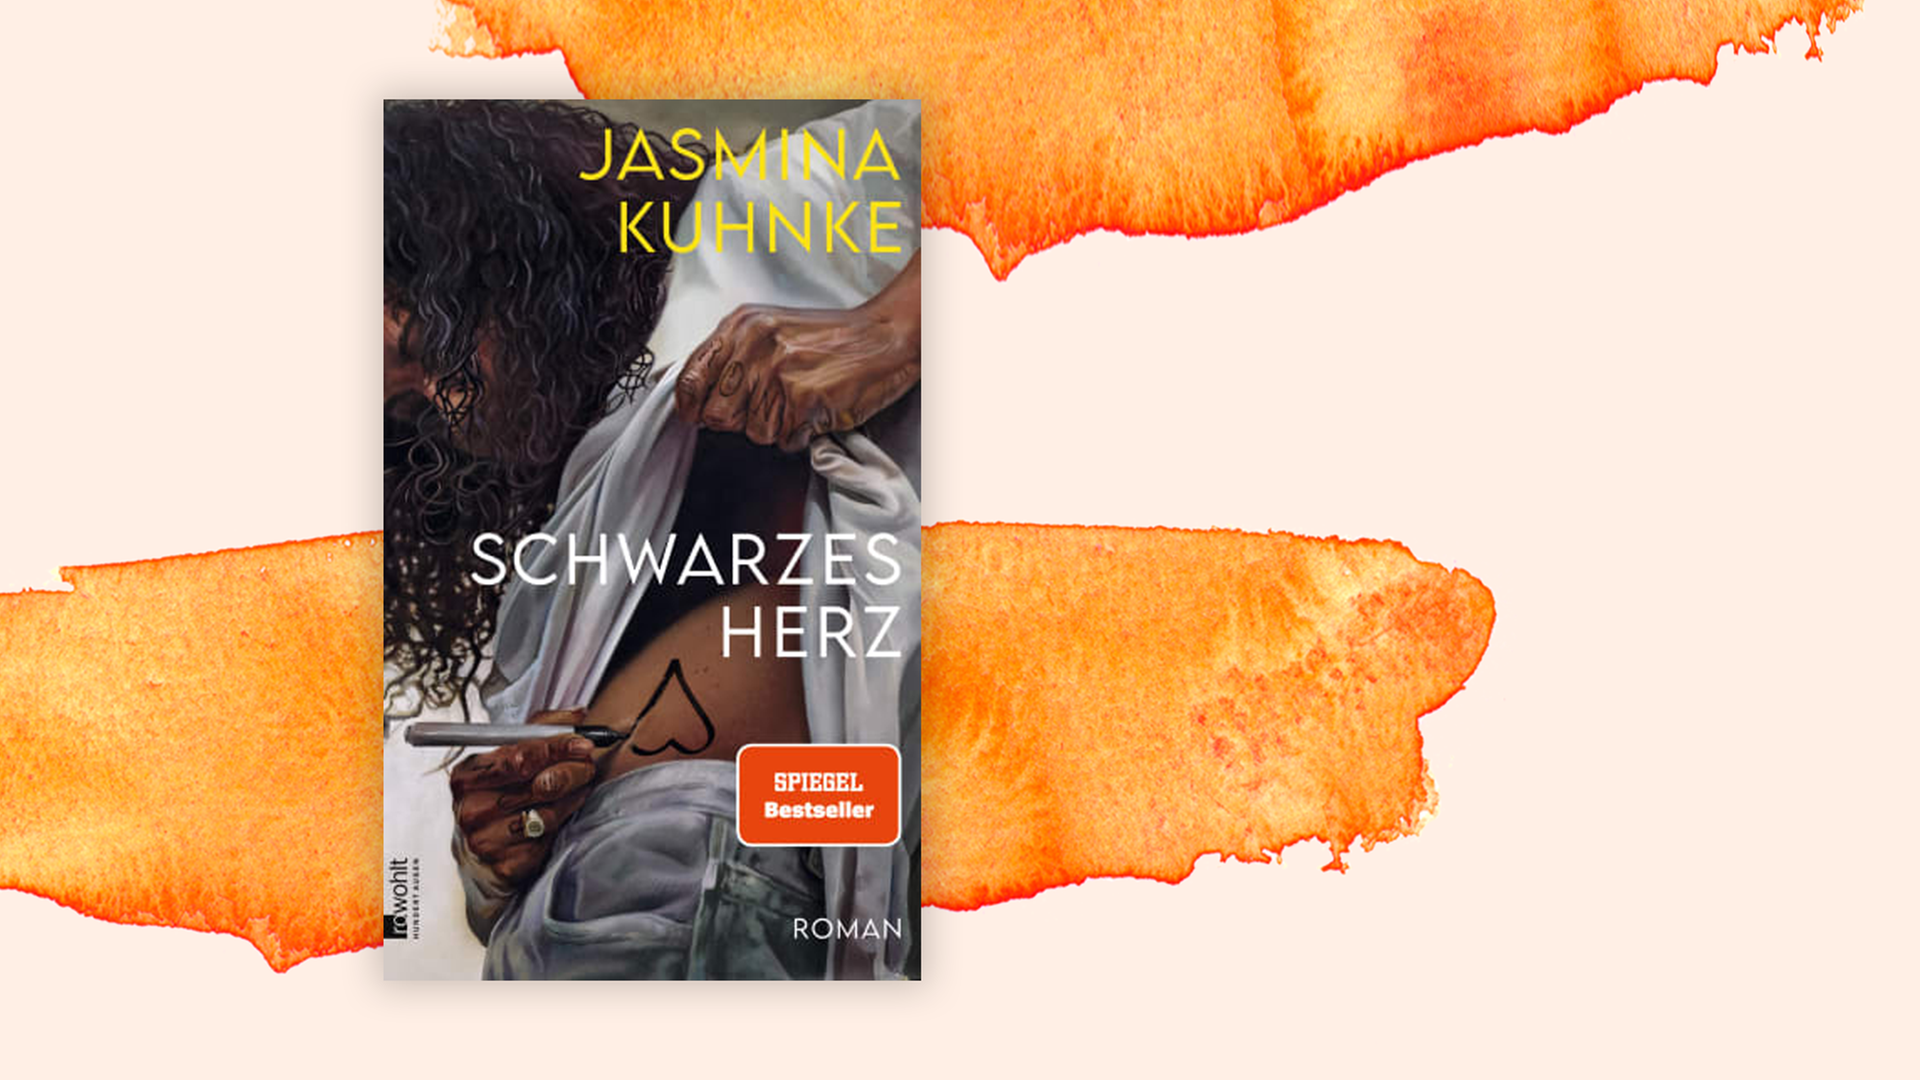 Das Buchcover von Jasmina Kuhnkes "Schwarzes Herz" vor einem orangefarbenen Hintergrund.